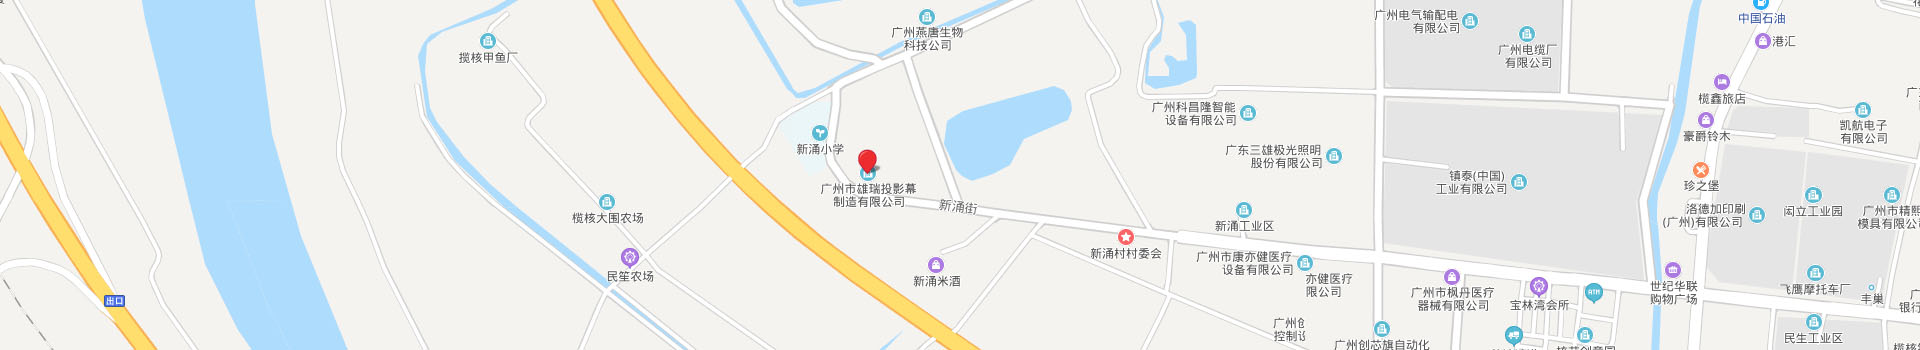 广州市雄瑞投影幕制造有限公司地址